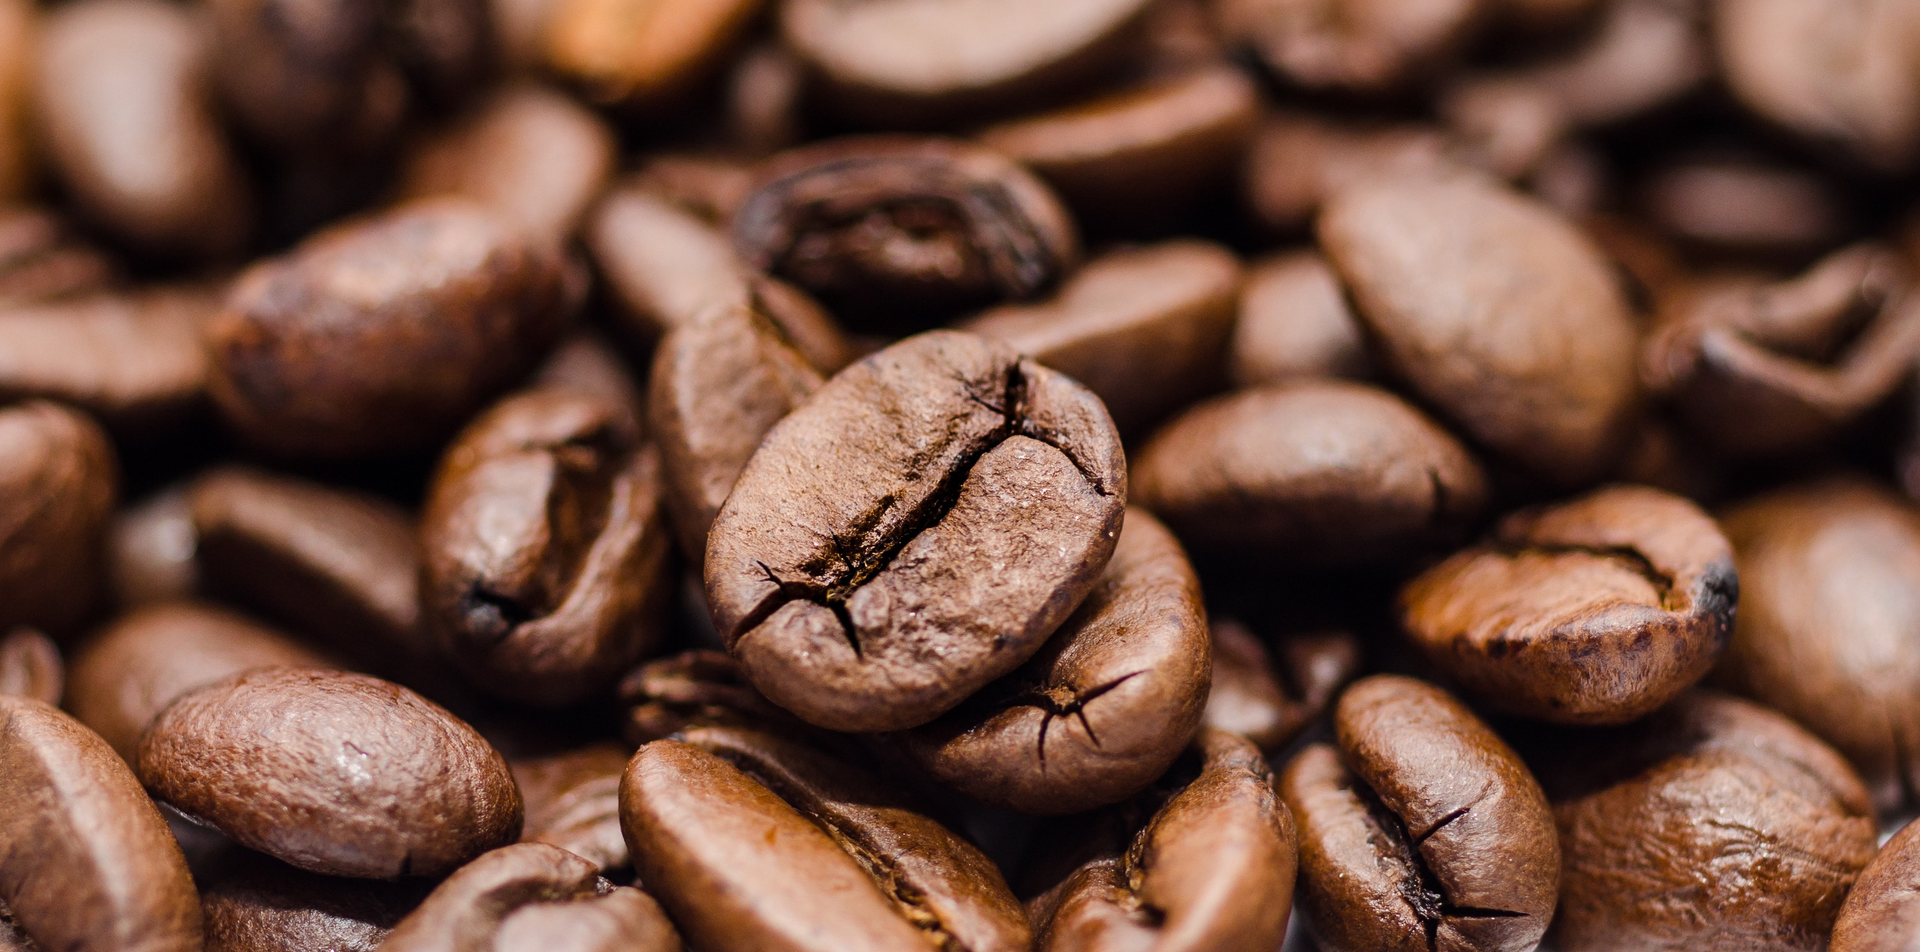 咖啡豆 咖啡粉 研磨咖啡 冰 咖啡廰 早餐店 經銷